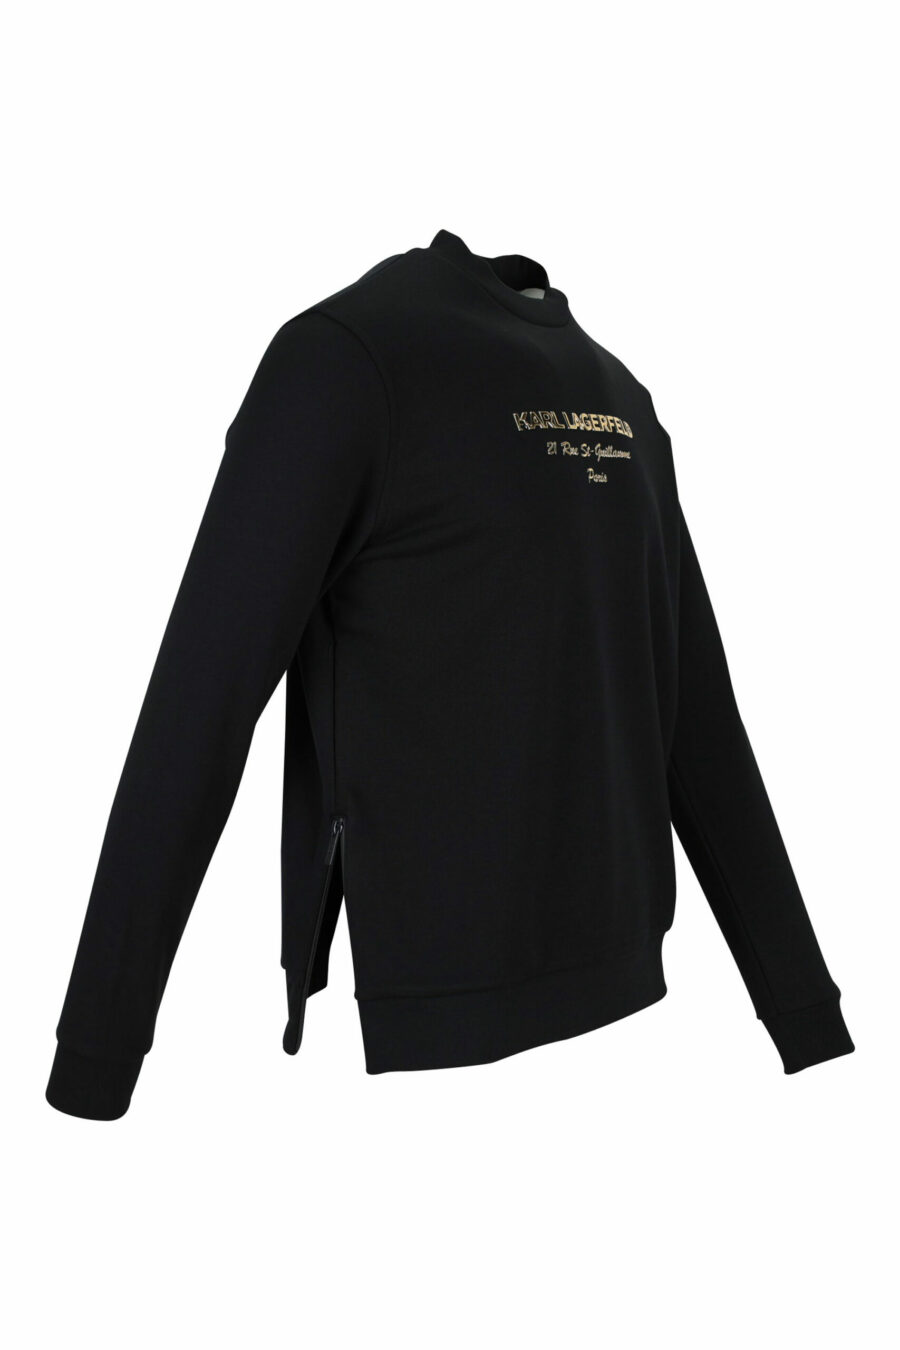 Schwarzes Sweatshirt mit "rue st guillaume" Logo in goldener Schrift - 4062226648271 1 skaliert